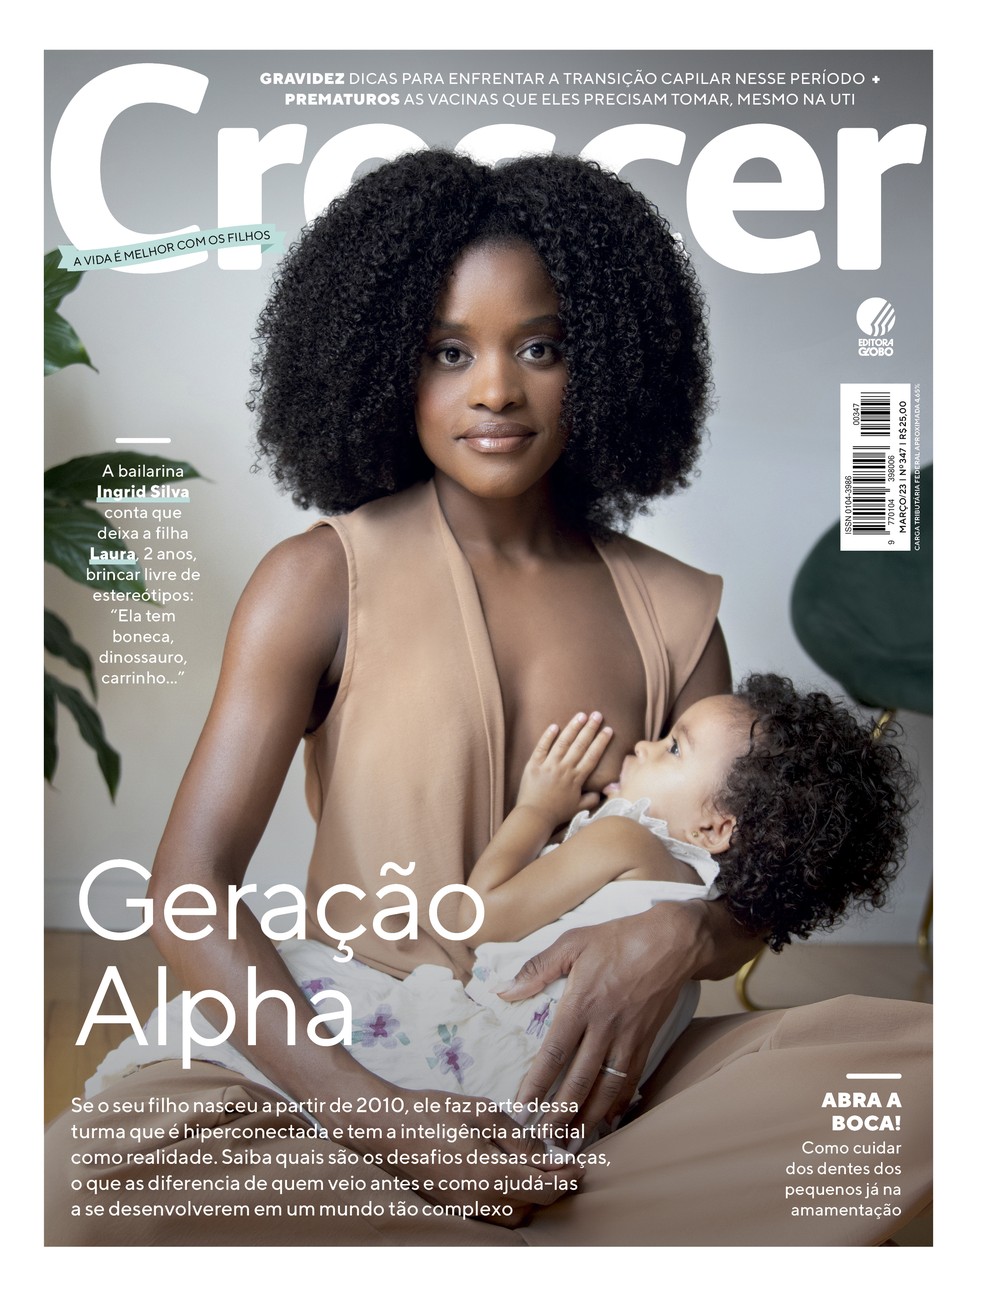 Capa da revista CRESCER de março, com a bailarina Ingrid Silva amamentando a filha, Laura, de 2 anos — Foto: Rodolfo Sanches/CRESCER